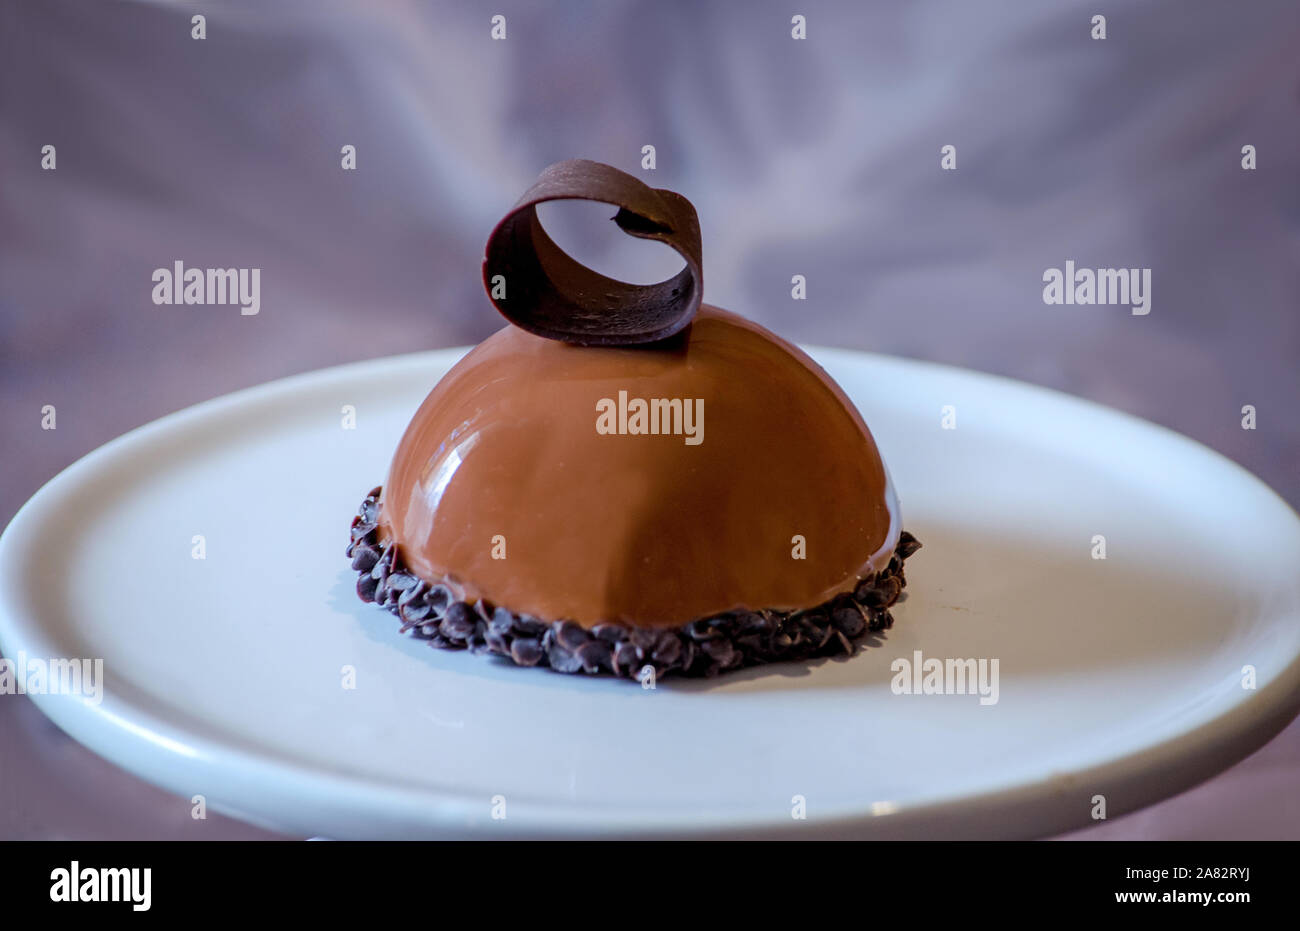 Délicieux gâteau au chocolat avec une souris chocolat curl, sur une plaque en céramique Banque D'Images